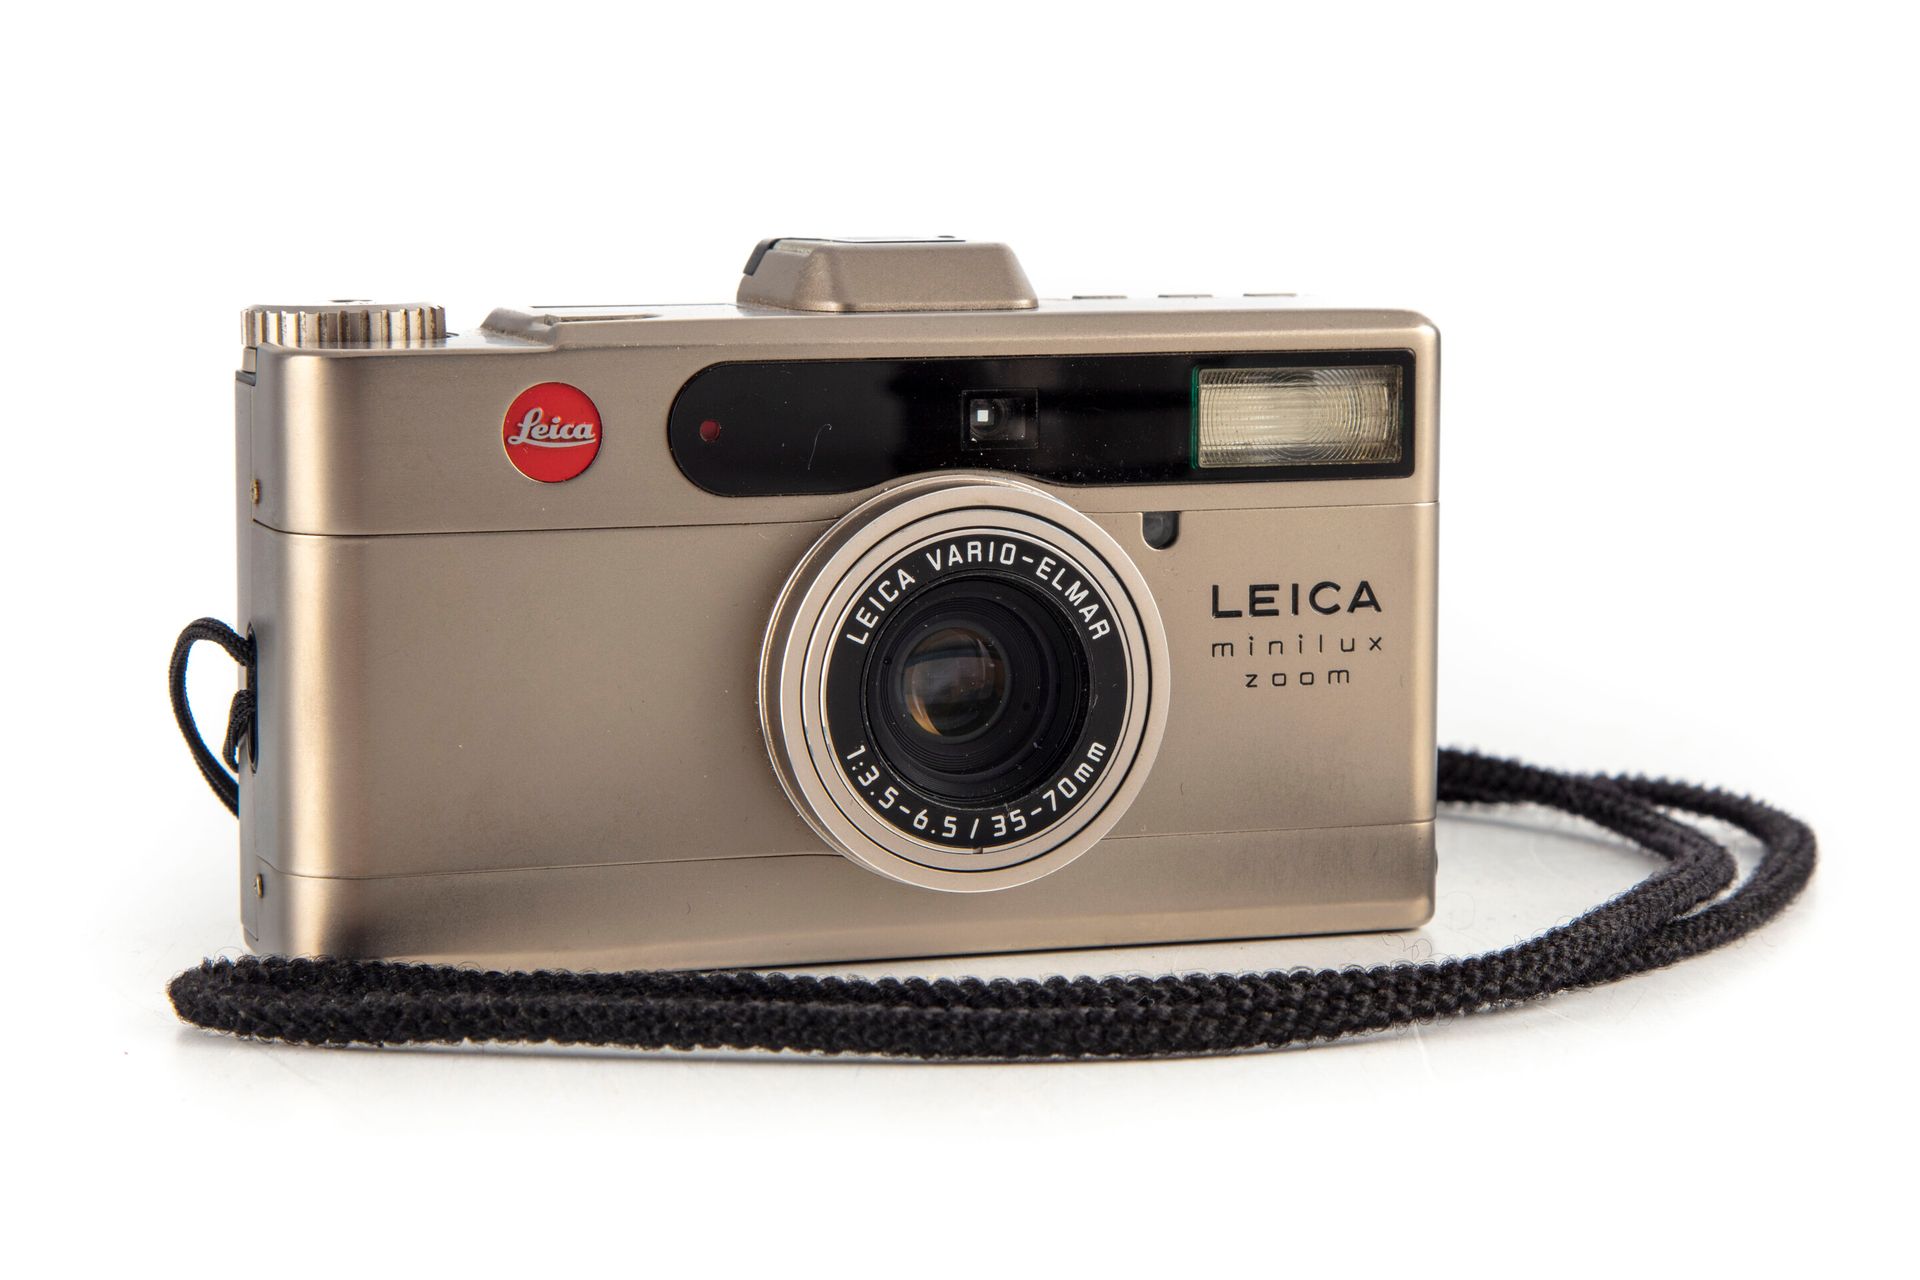 Null LEICA 

Modelo de cámara Minilux Zoom 

Se incluye un flash Leica CF